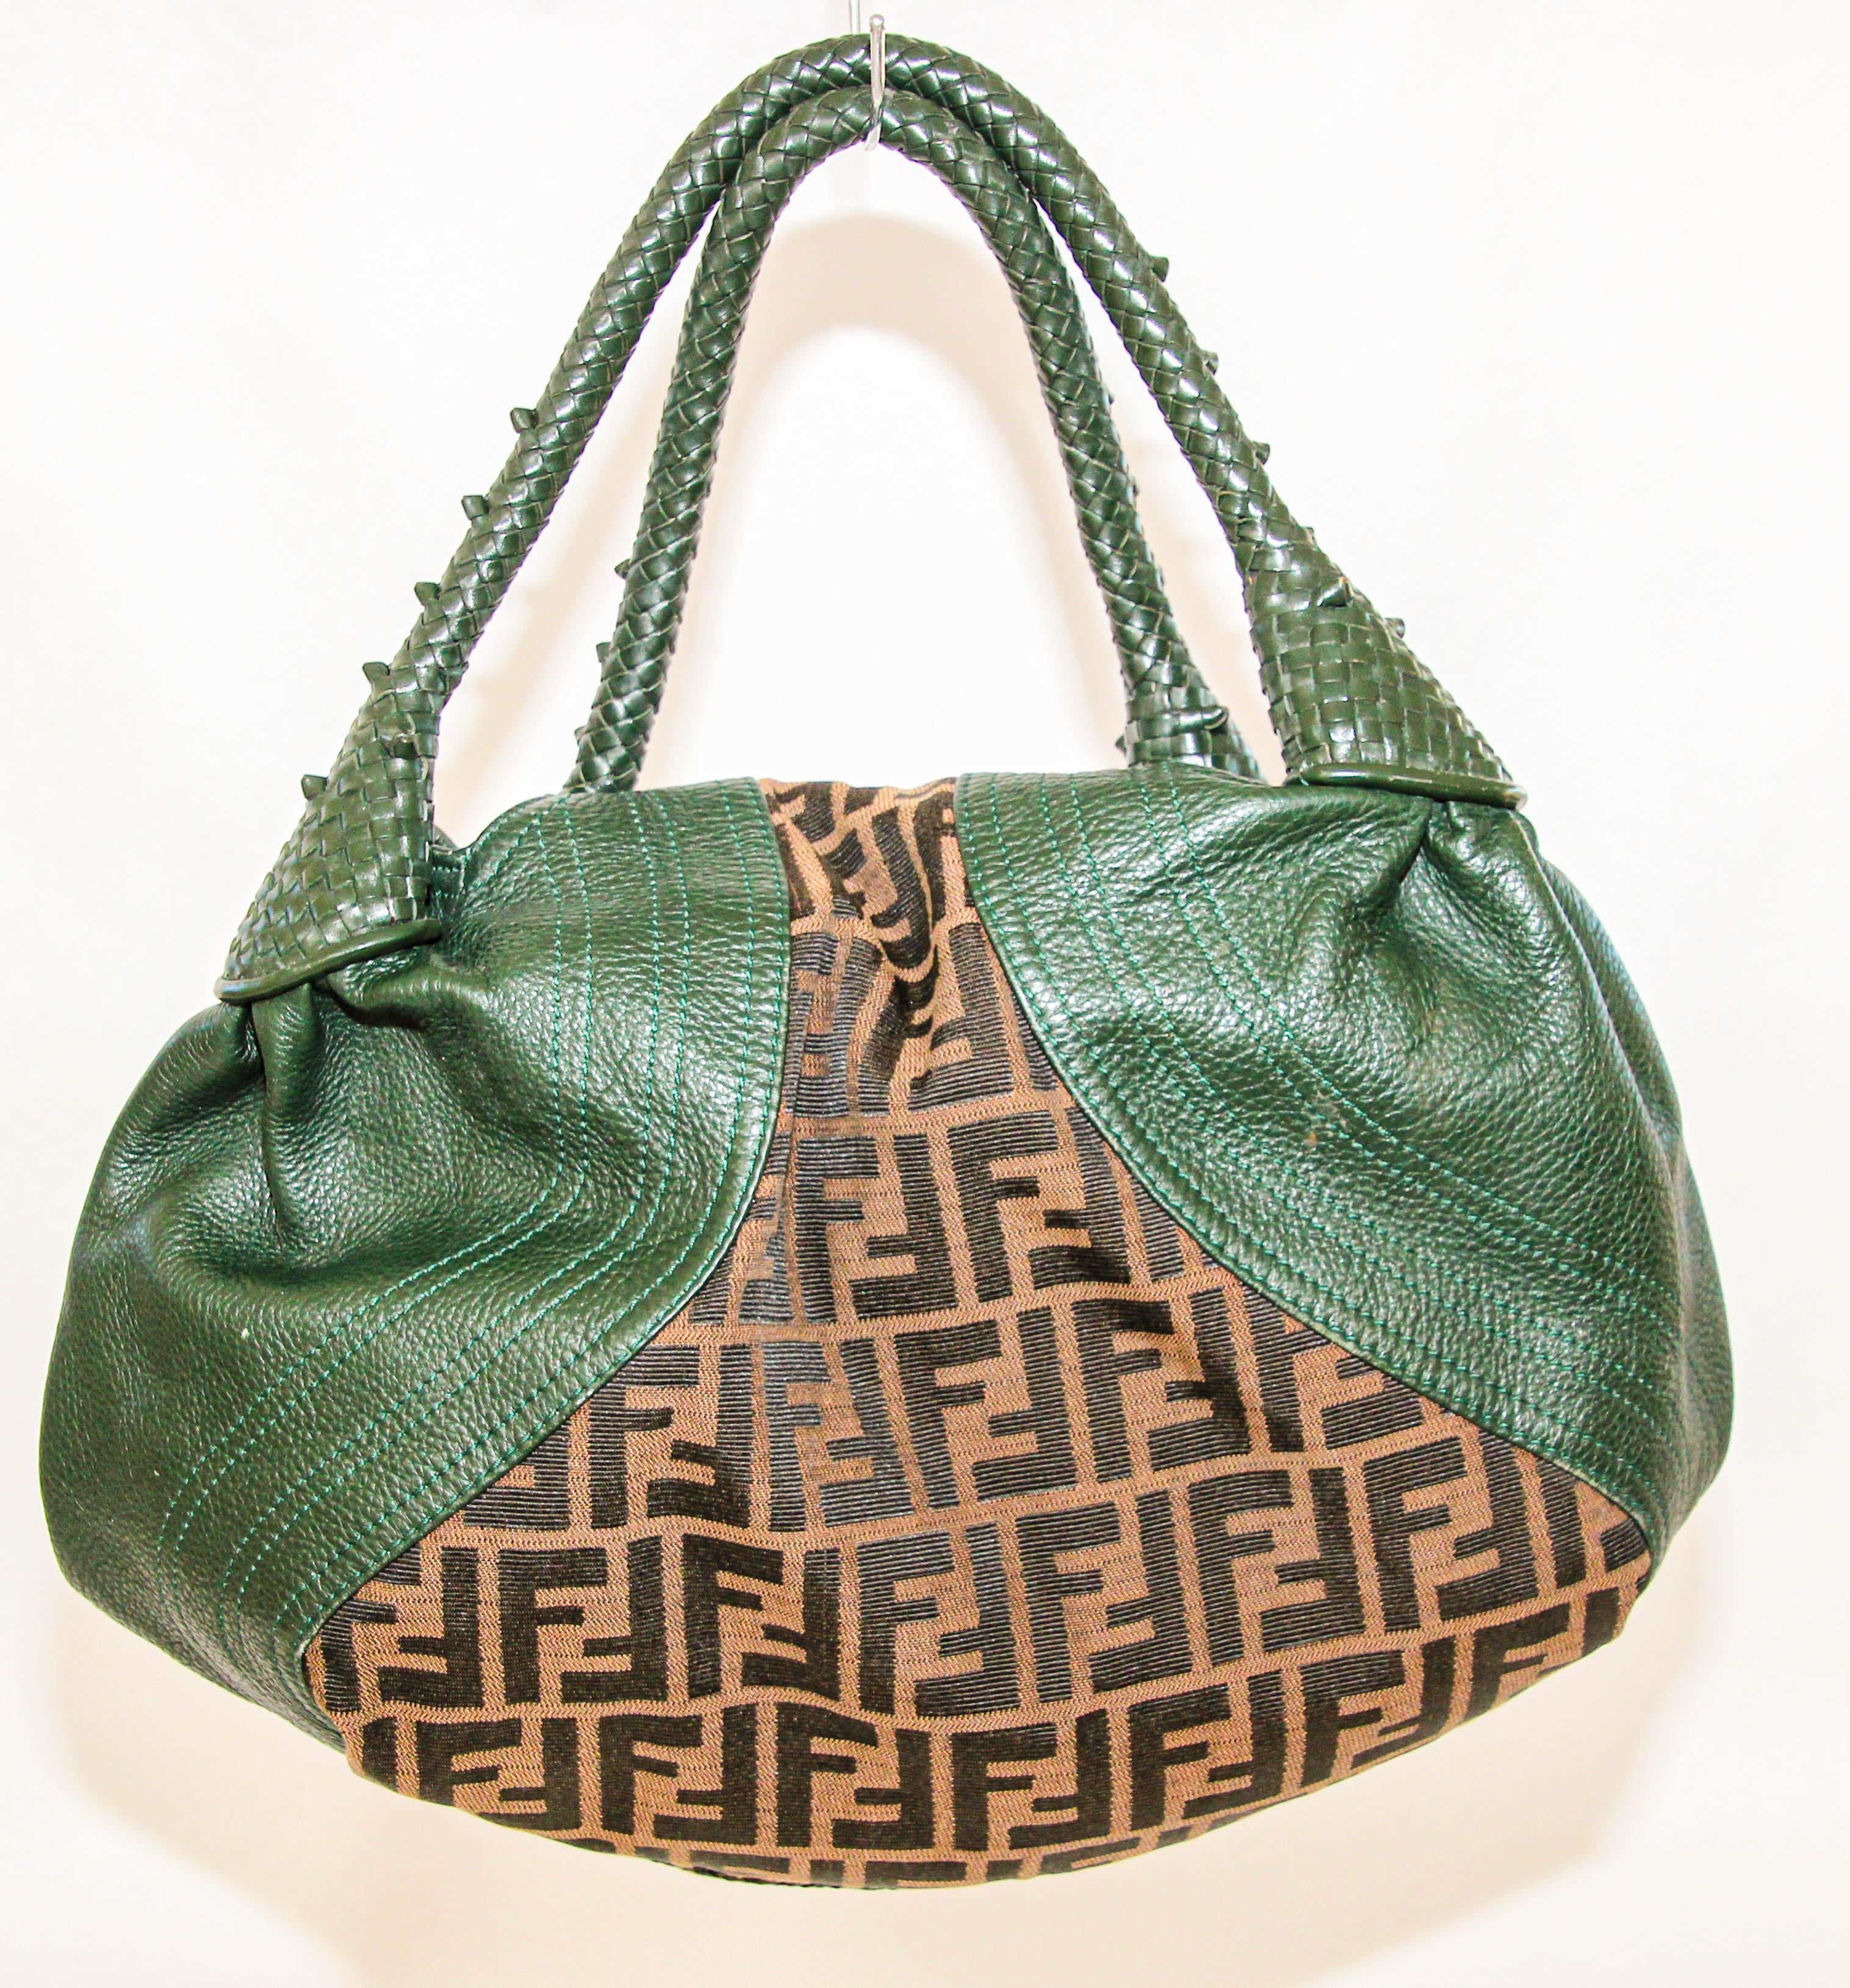 Grand sac d'espionnage en toile et cuir Zucca vert et marron de Fendi.
Le sac Fendi Spy est un sac féminin emblématique des années 1980-1990. 
Cuir vert vintage avec accents matériels dorés et tissu imprimé Fendi Zucca à l'extérieur et à